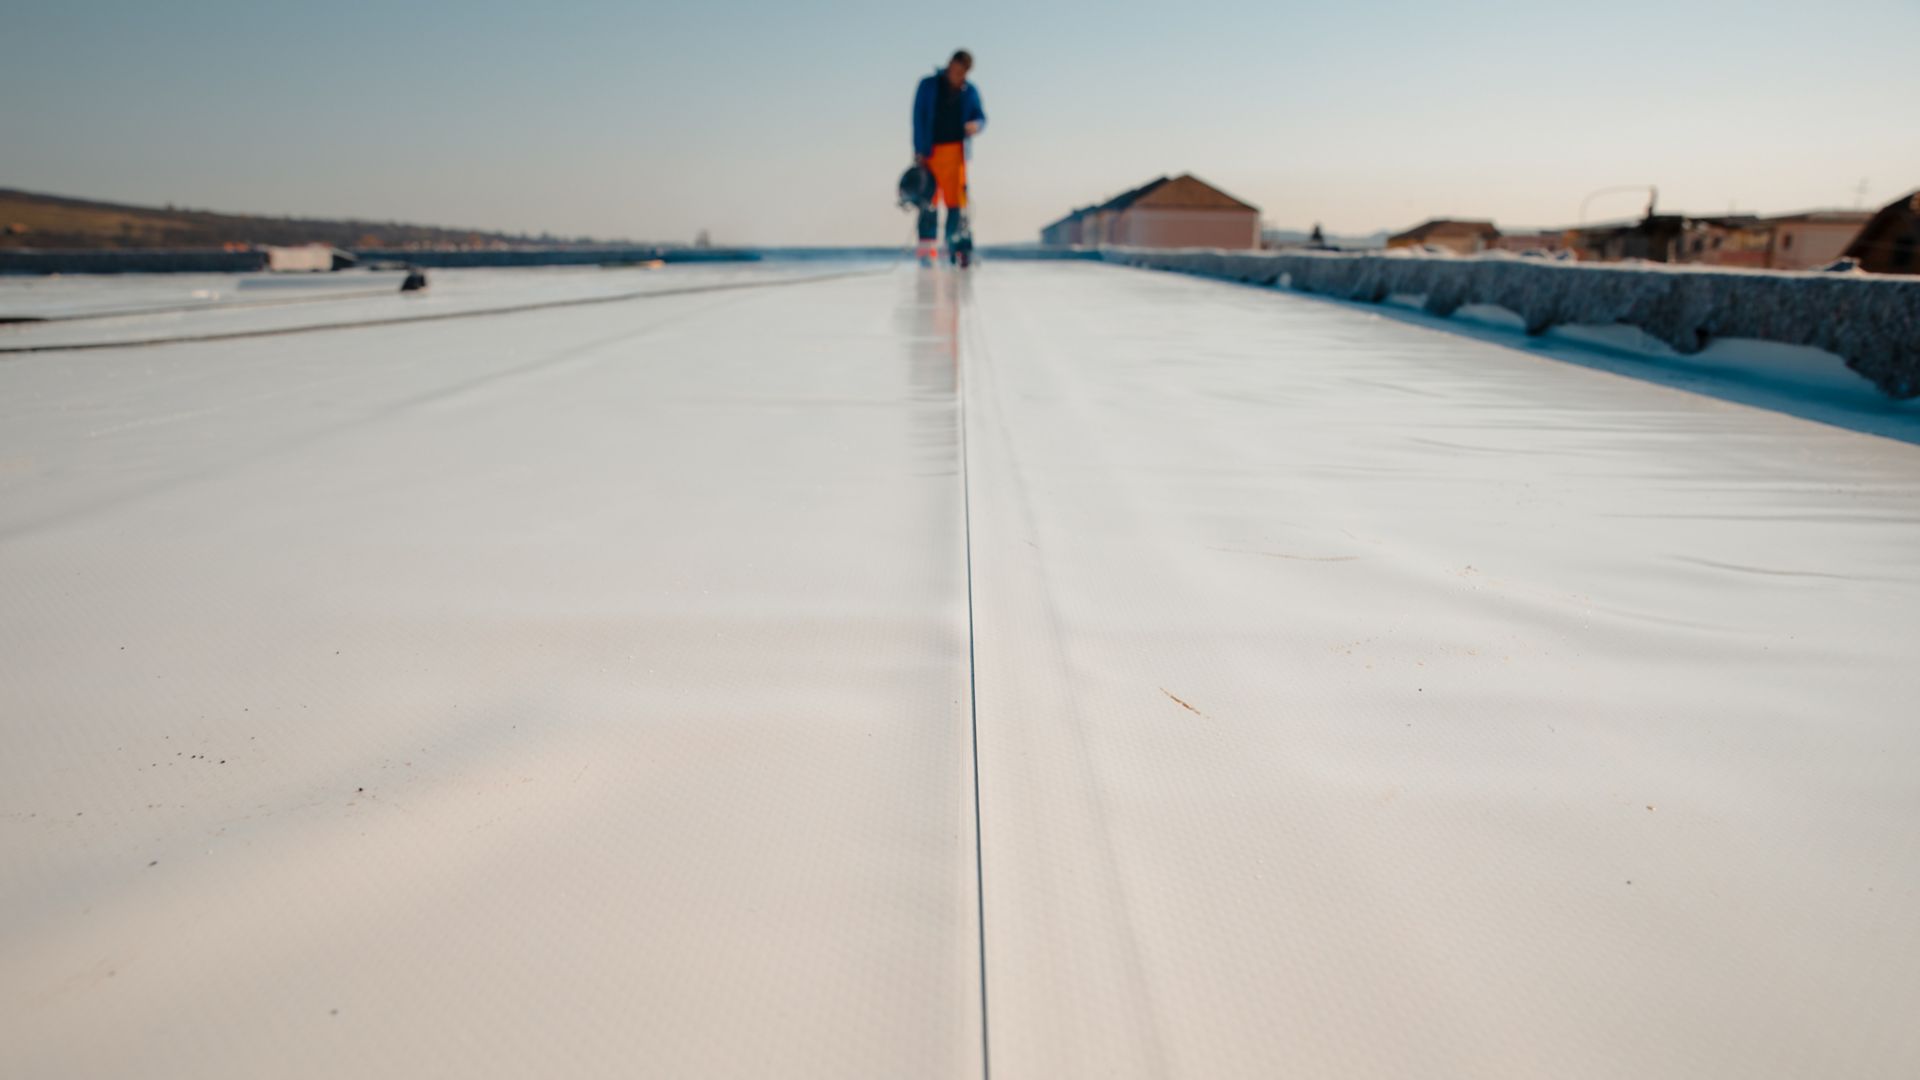 Imperméabilisation et isolation sur le chantier, membrane d’imperméabilisation empêchant la pénétration de l’eau. Barrière extérieure de vapeur pour le toit.